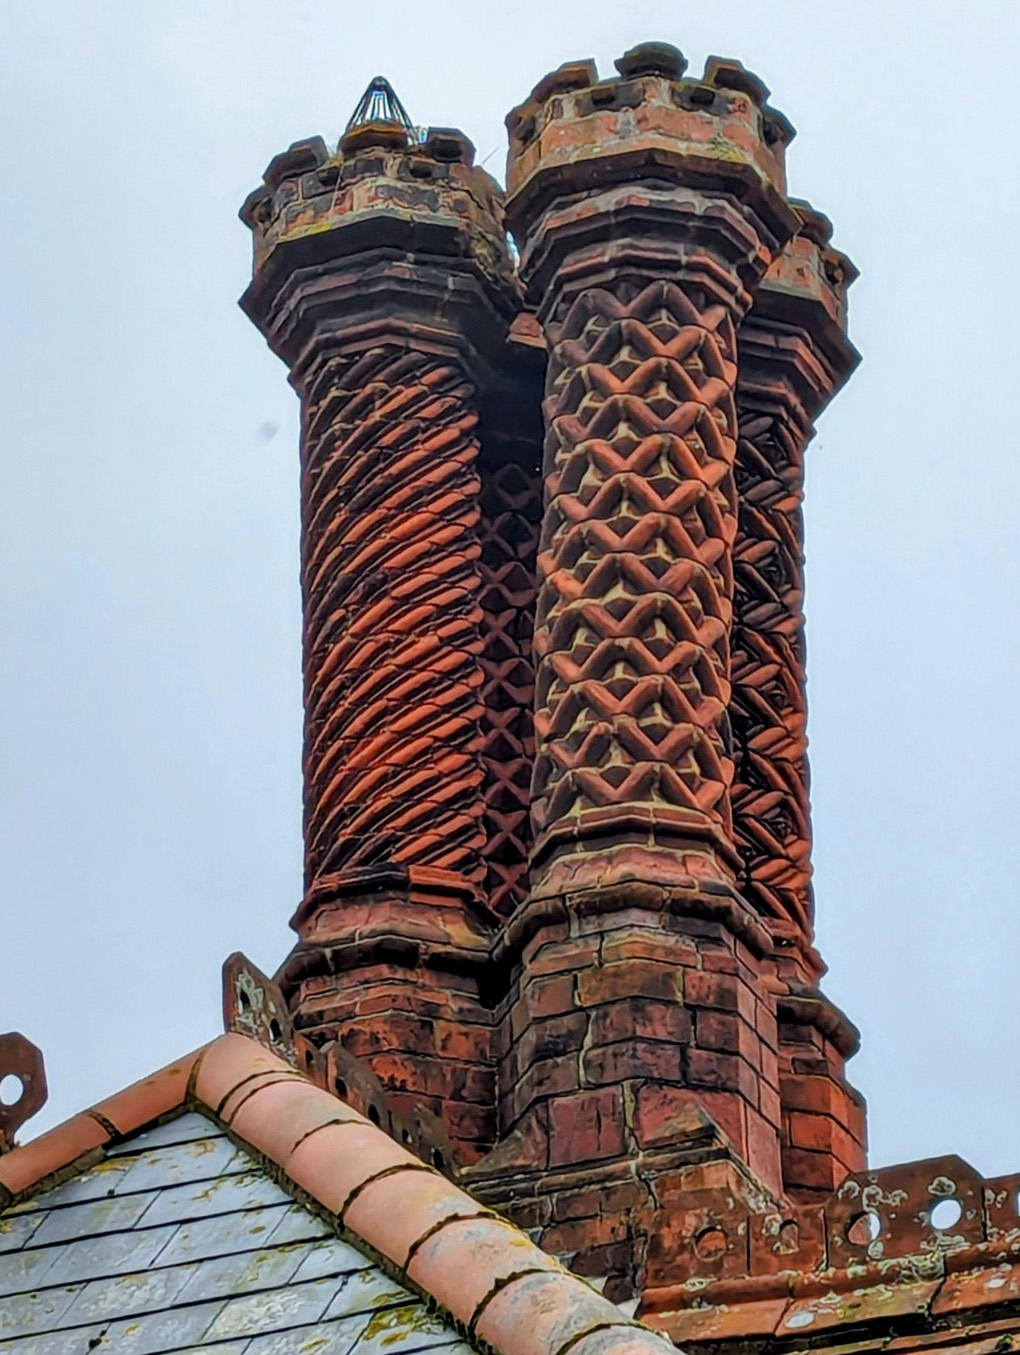 Ornate brick chimney stack.